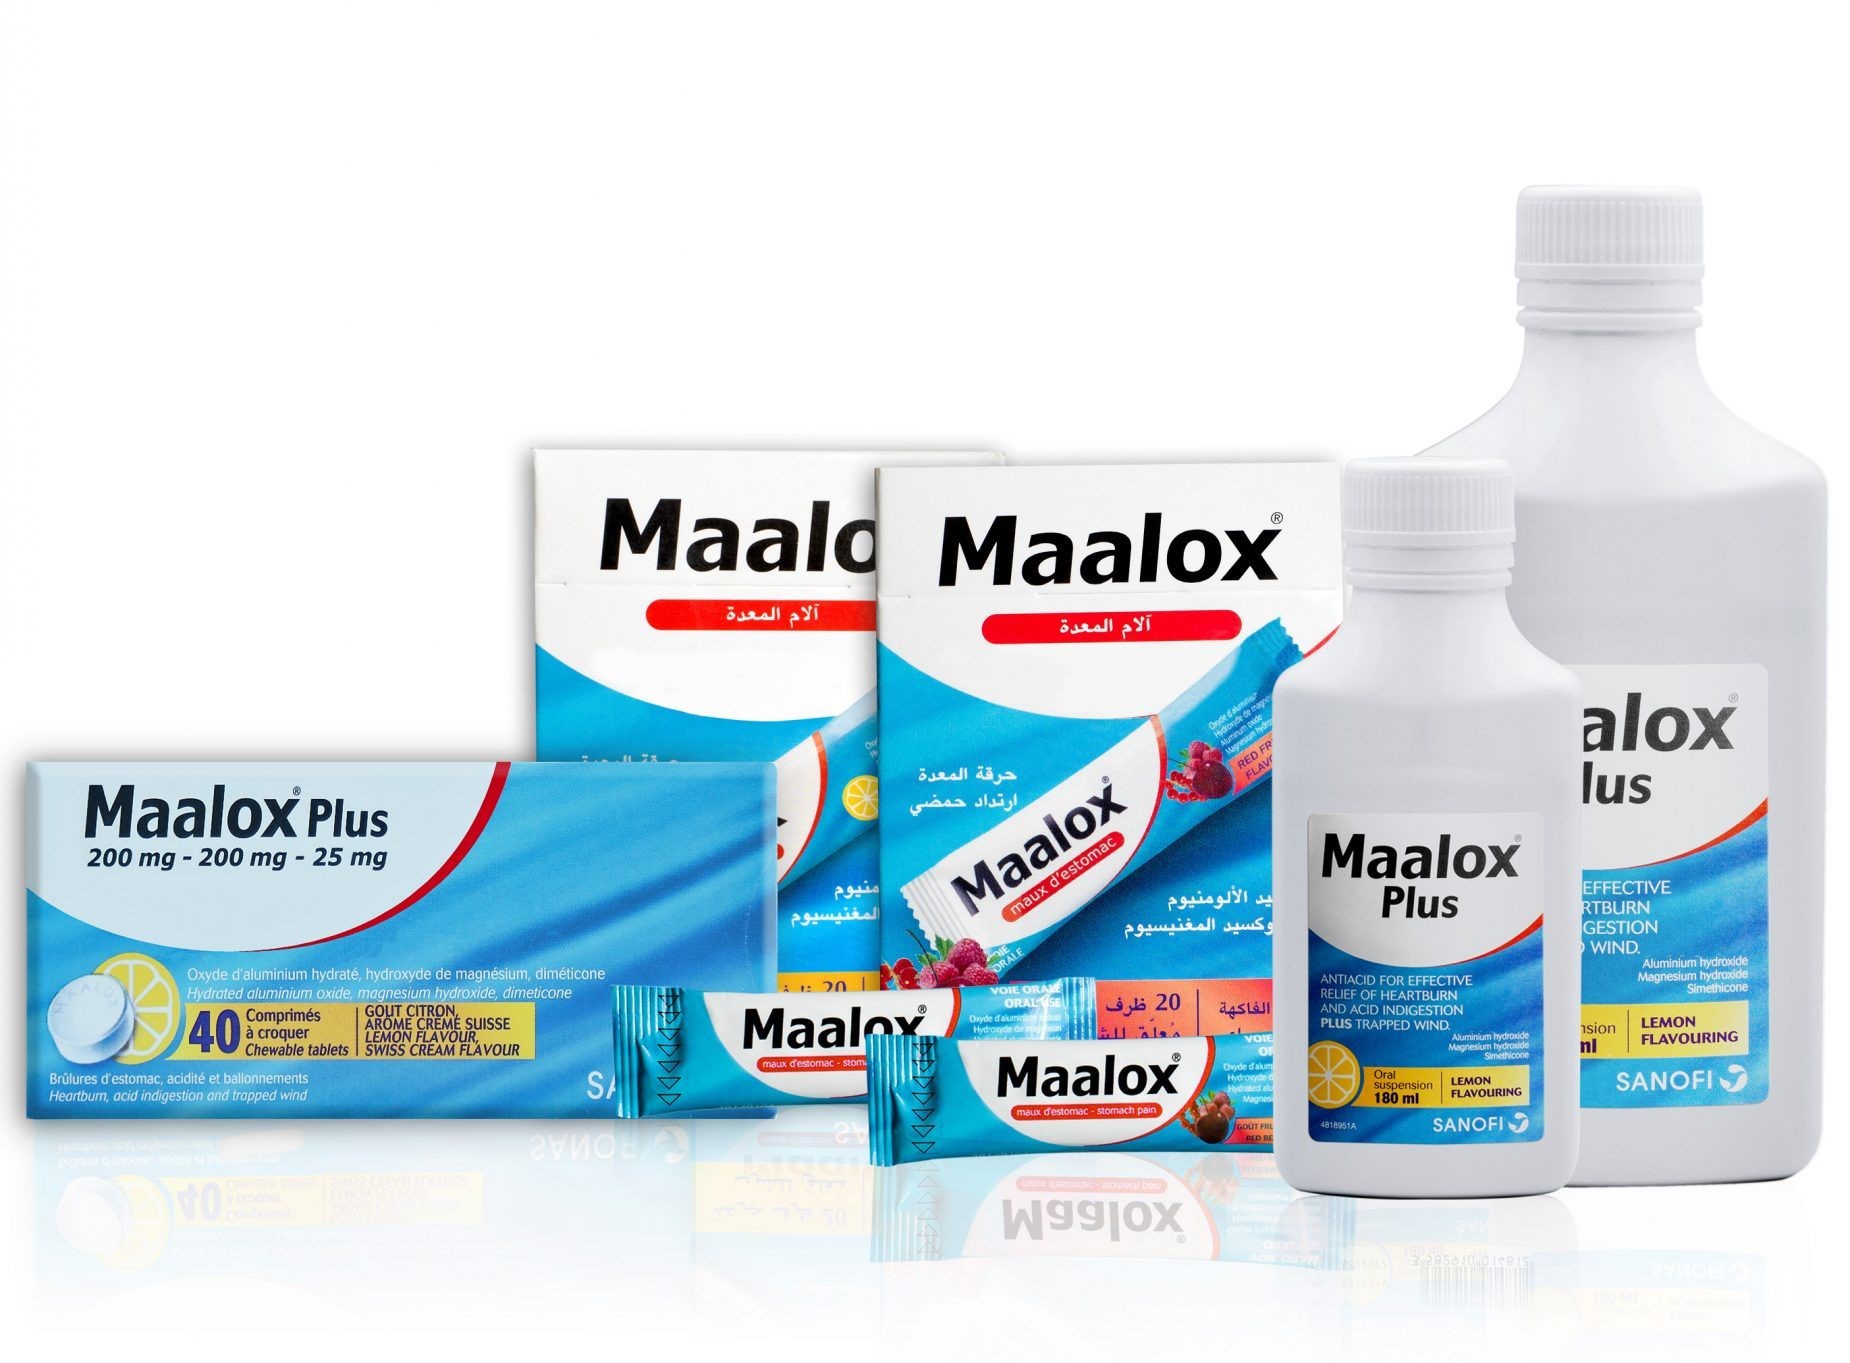 اقوي دواء لحرقة المعدة مالوكس Maalox للقضاء علي الحموضة بالمعدة